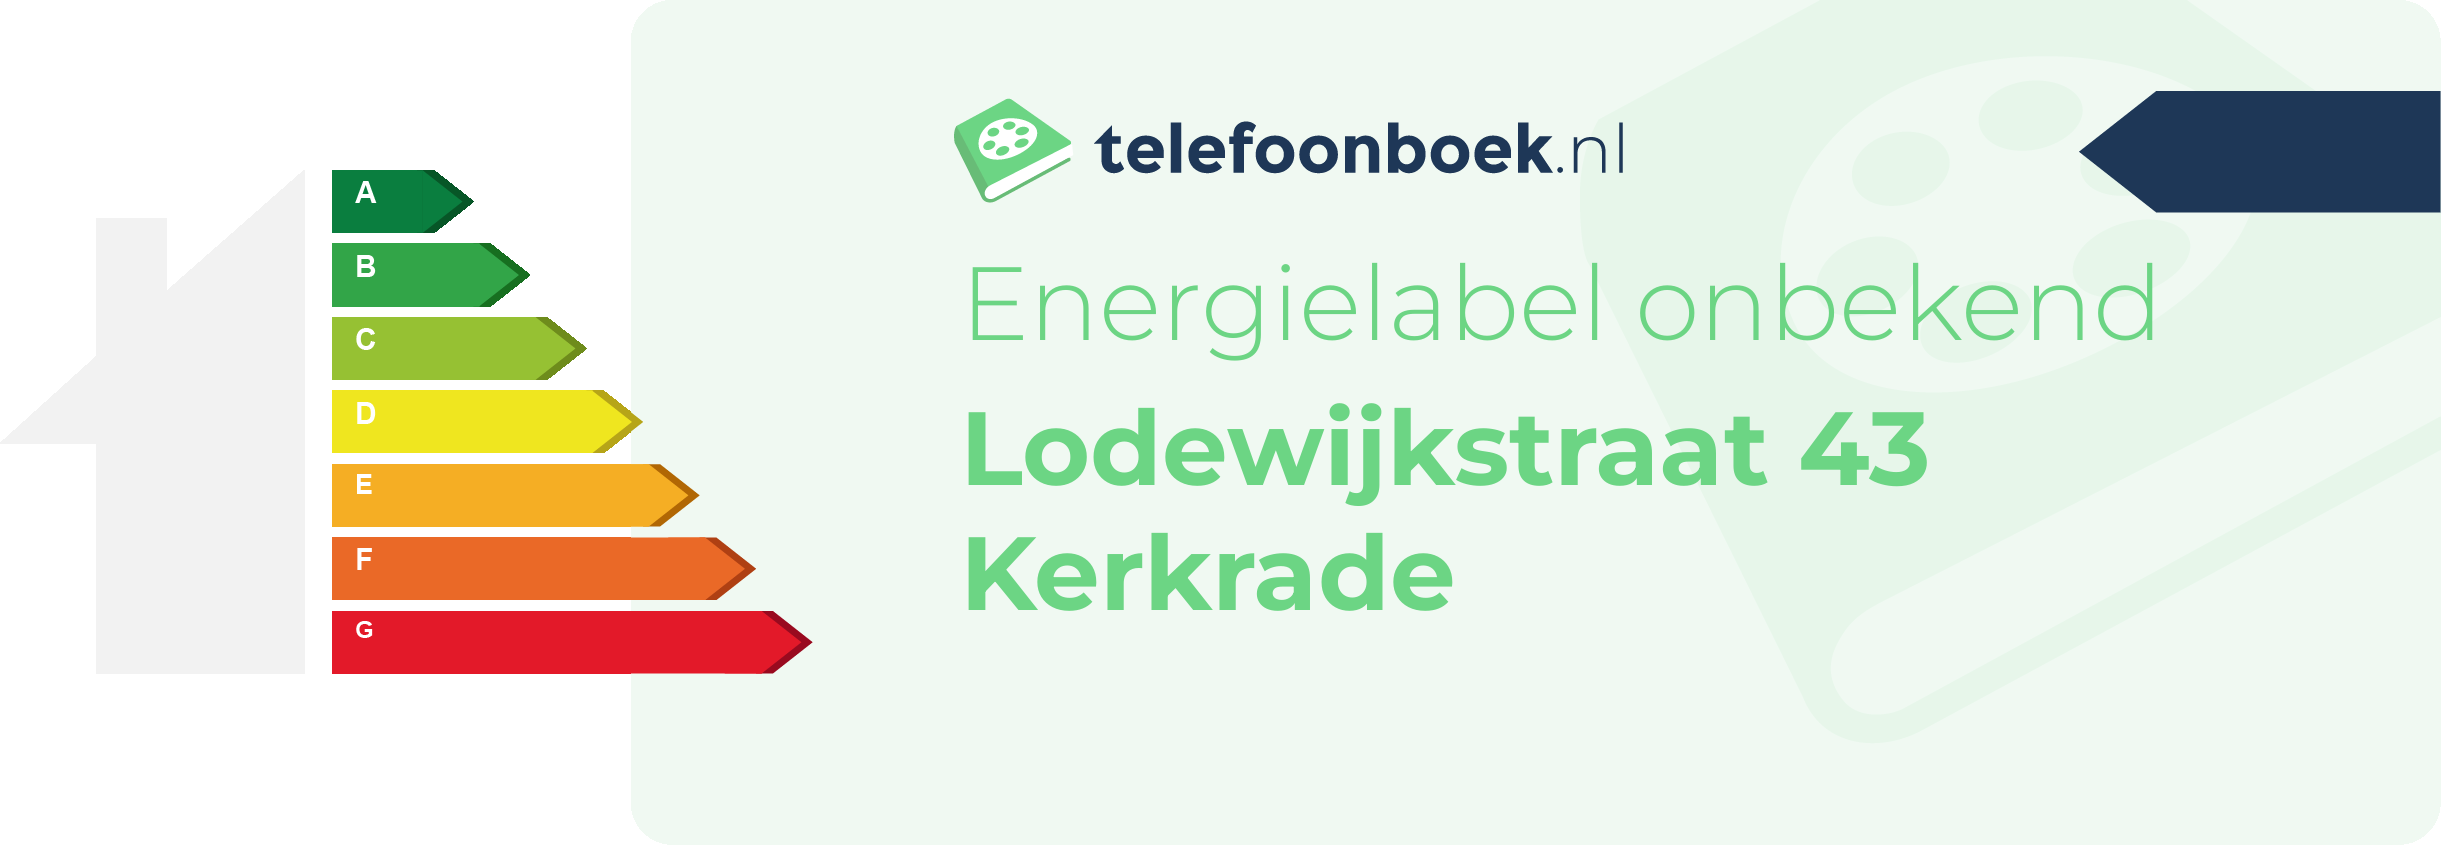 Energielabel Lodewijkstraat 43 Kerkrade